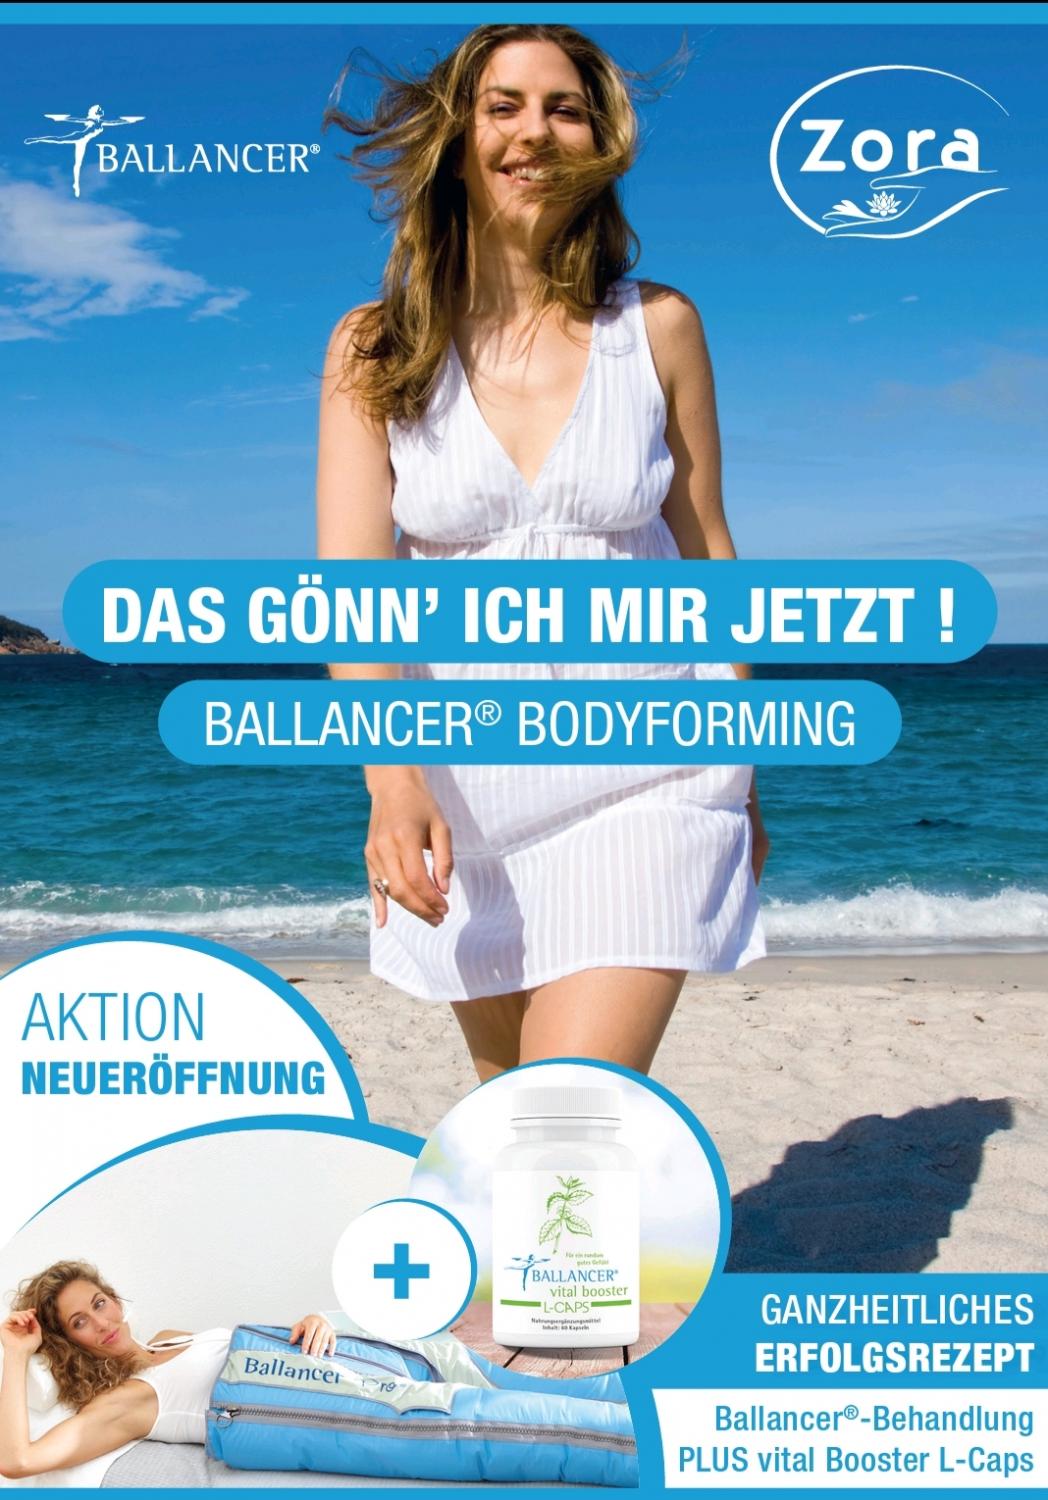 Ballancer ® Bodyforming